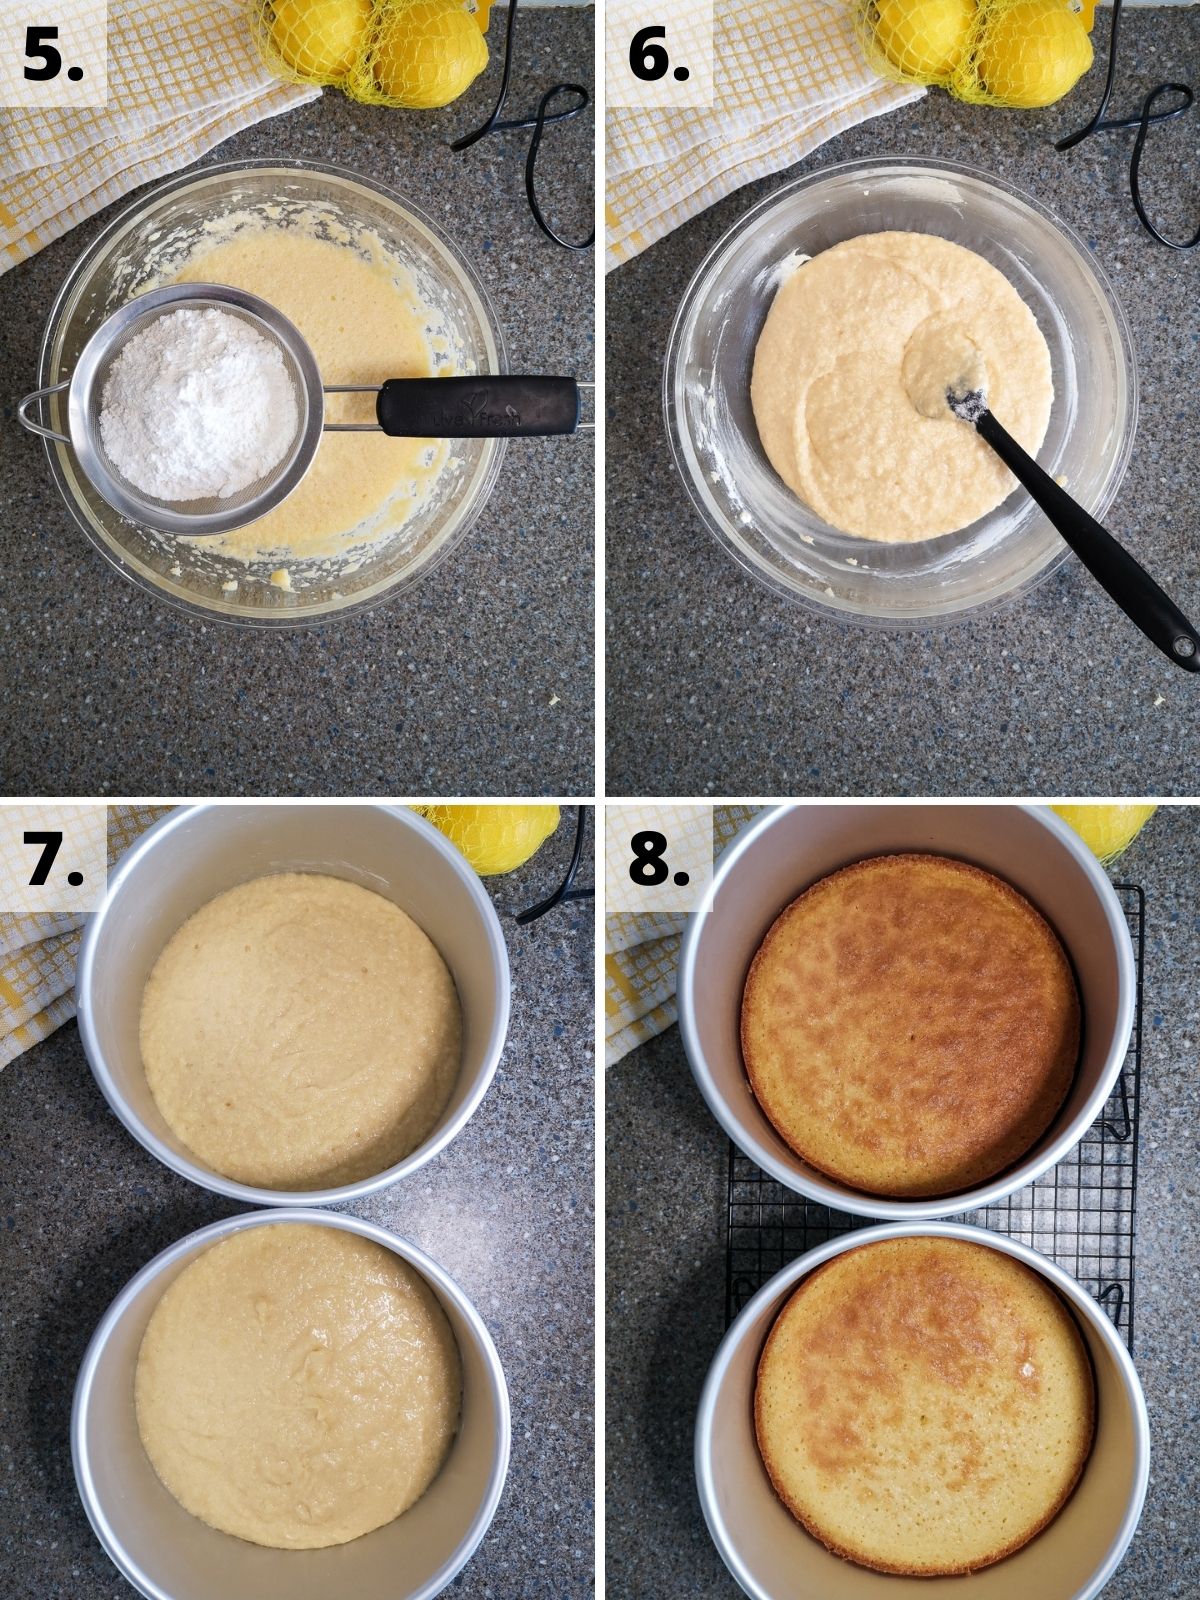 lemon curd cake recipe method sponges steps 5 - 8